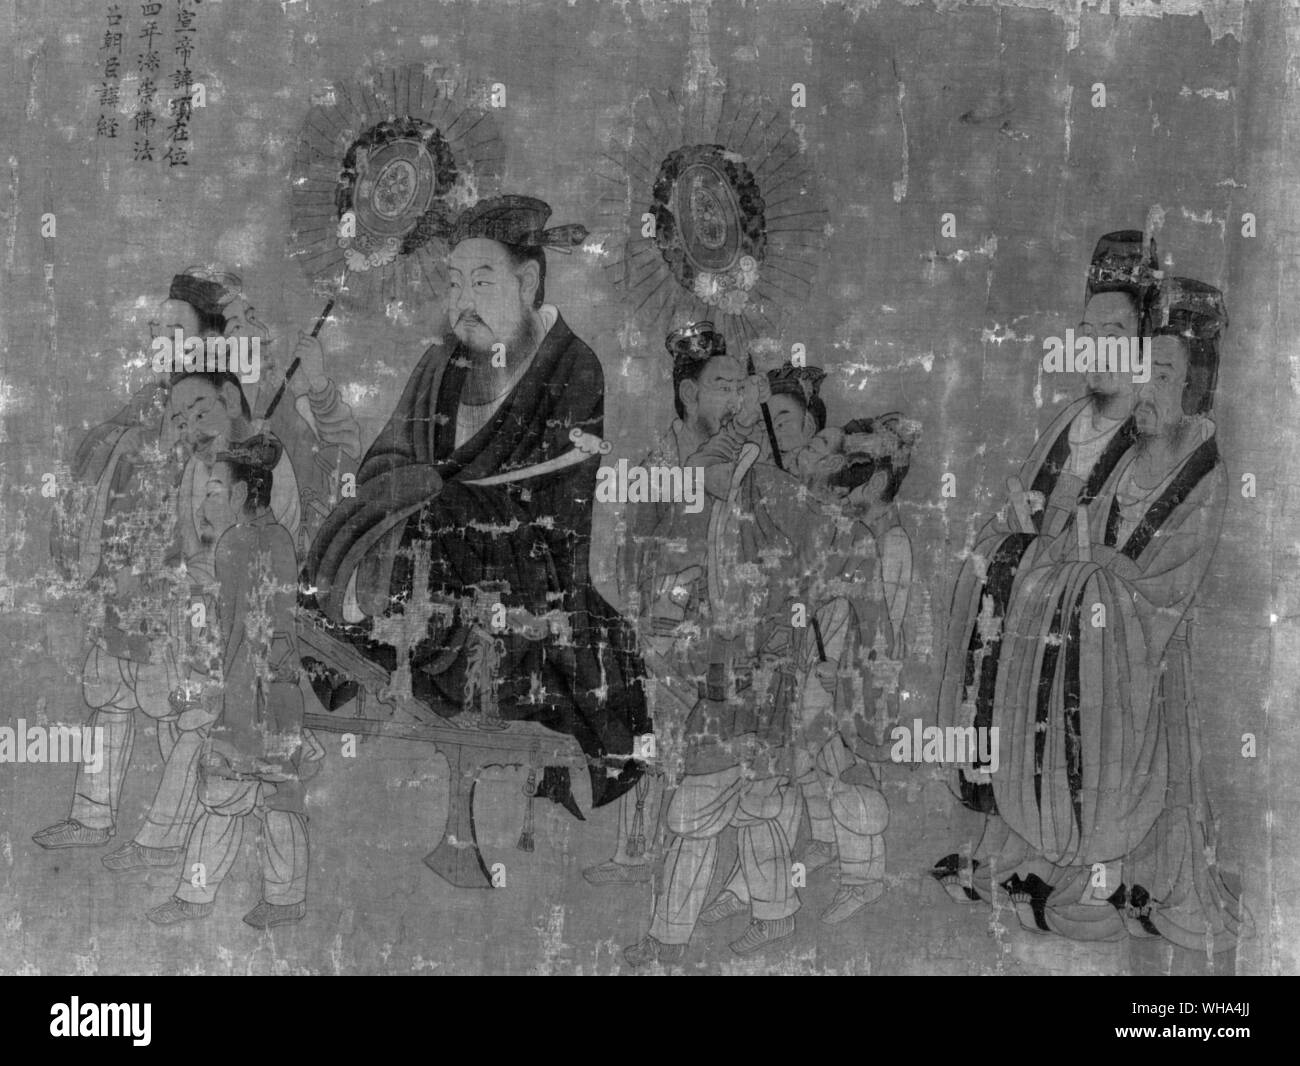 Yen Li penna. L'imperatore Husan (Hsuan ?) Ti di Ch'en dinastia.. Yen Li-pen , d. 673, pittore cinese il primo maestro di T'ang dinastia. Egli divenne il più celebrato pittore di corte del VII sec. e tenuto più alta negli uffici pubblici. Anche se probabilmente nessuna delle sue opere originali oggi sopravvive, record ci dicono che era famoso per i suoi dipinti di buddisti e taoisti temi e anche come il pittore di personaggi storici e gli eventi. Il superbo dipinto di scorrimento ritratti dei tredici imperatori nel Museo delle Belle Arti di Boston, è stata attribuita a lui ma può essere una copia. Esso rappresenta Foto Stock